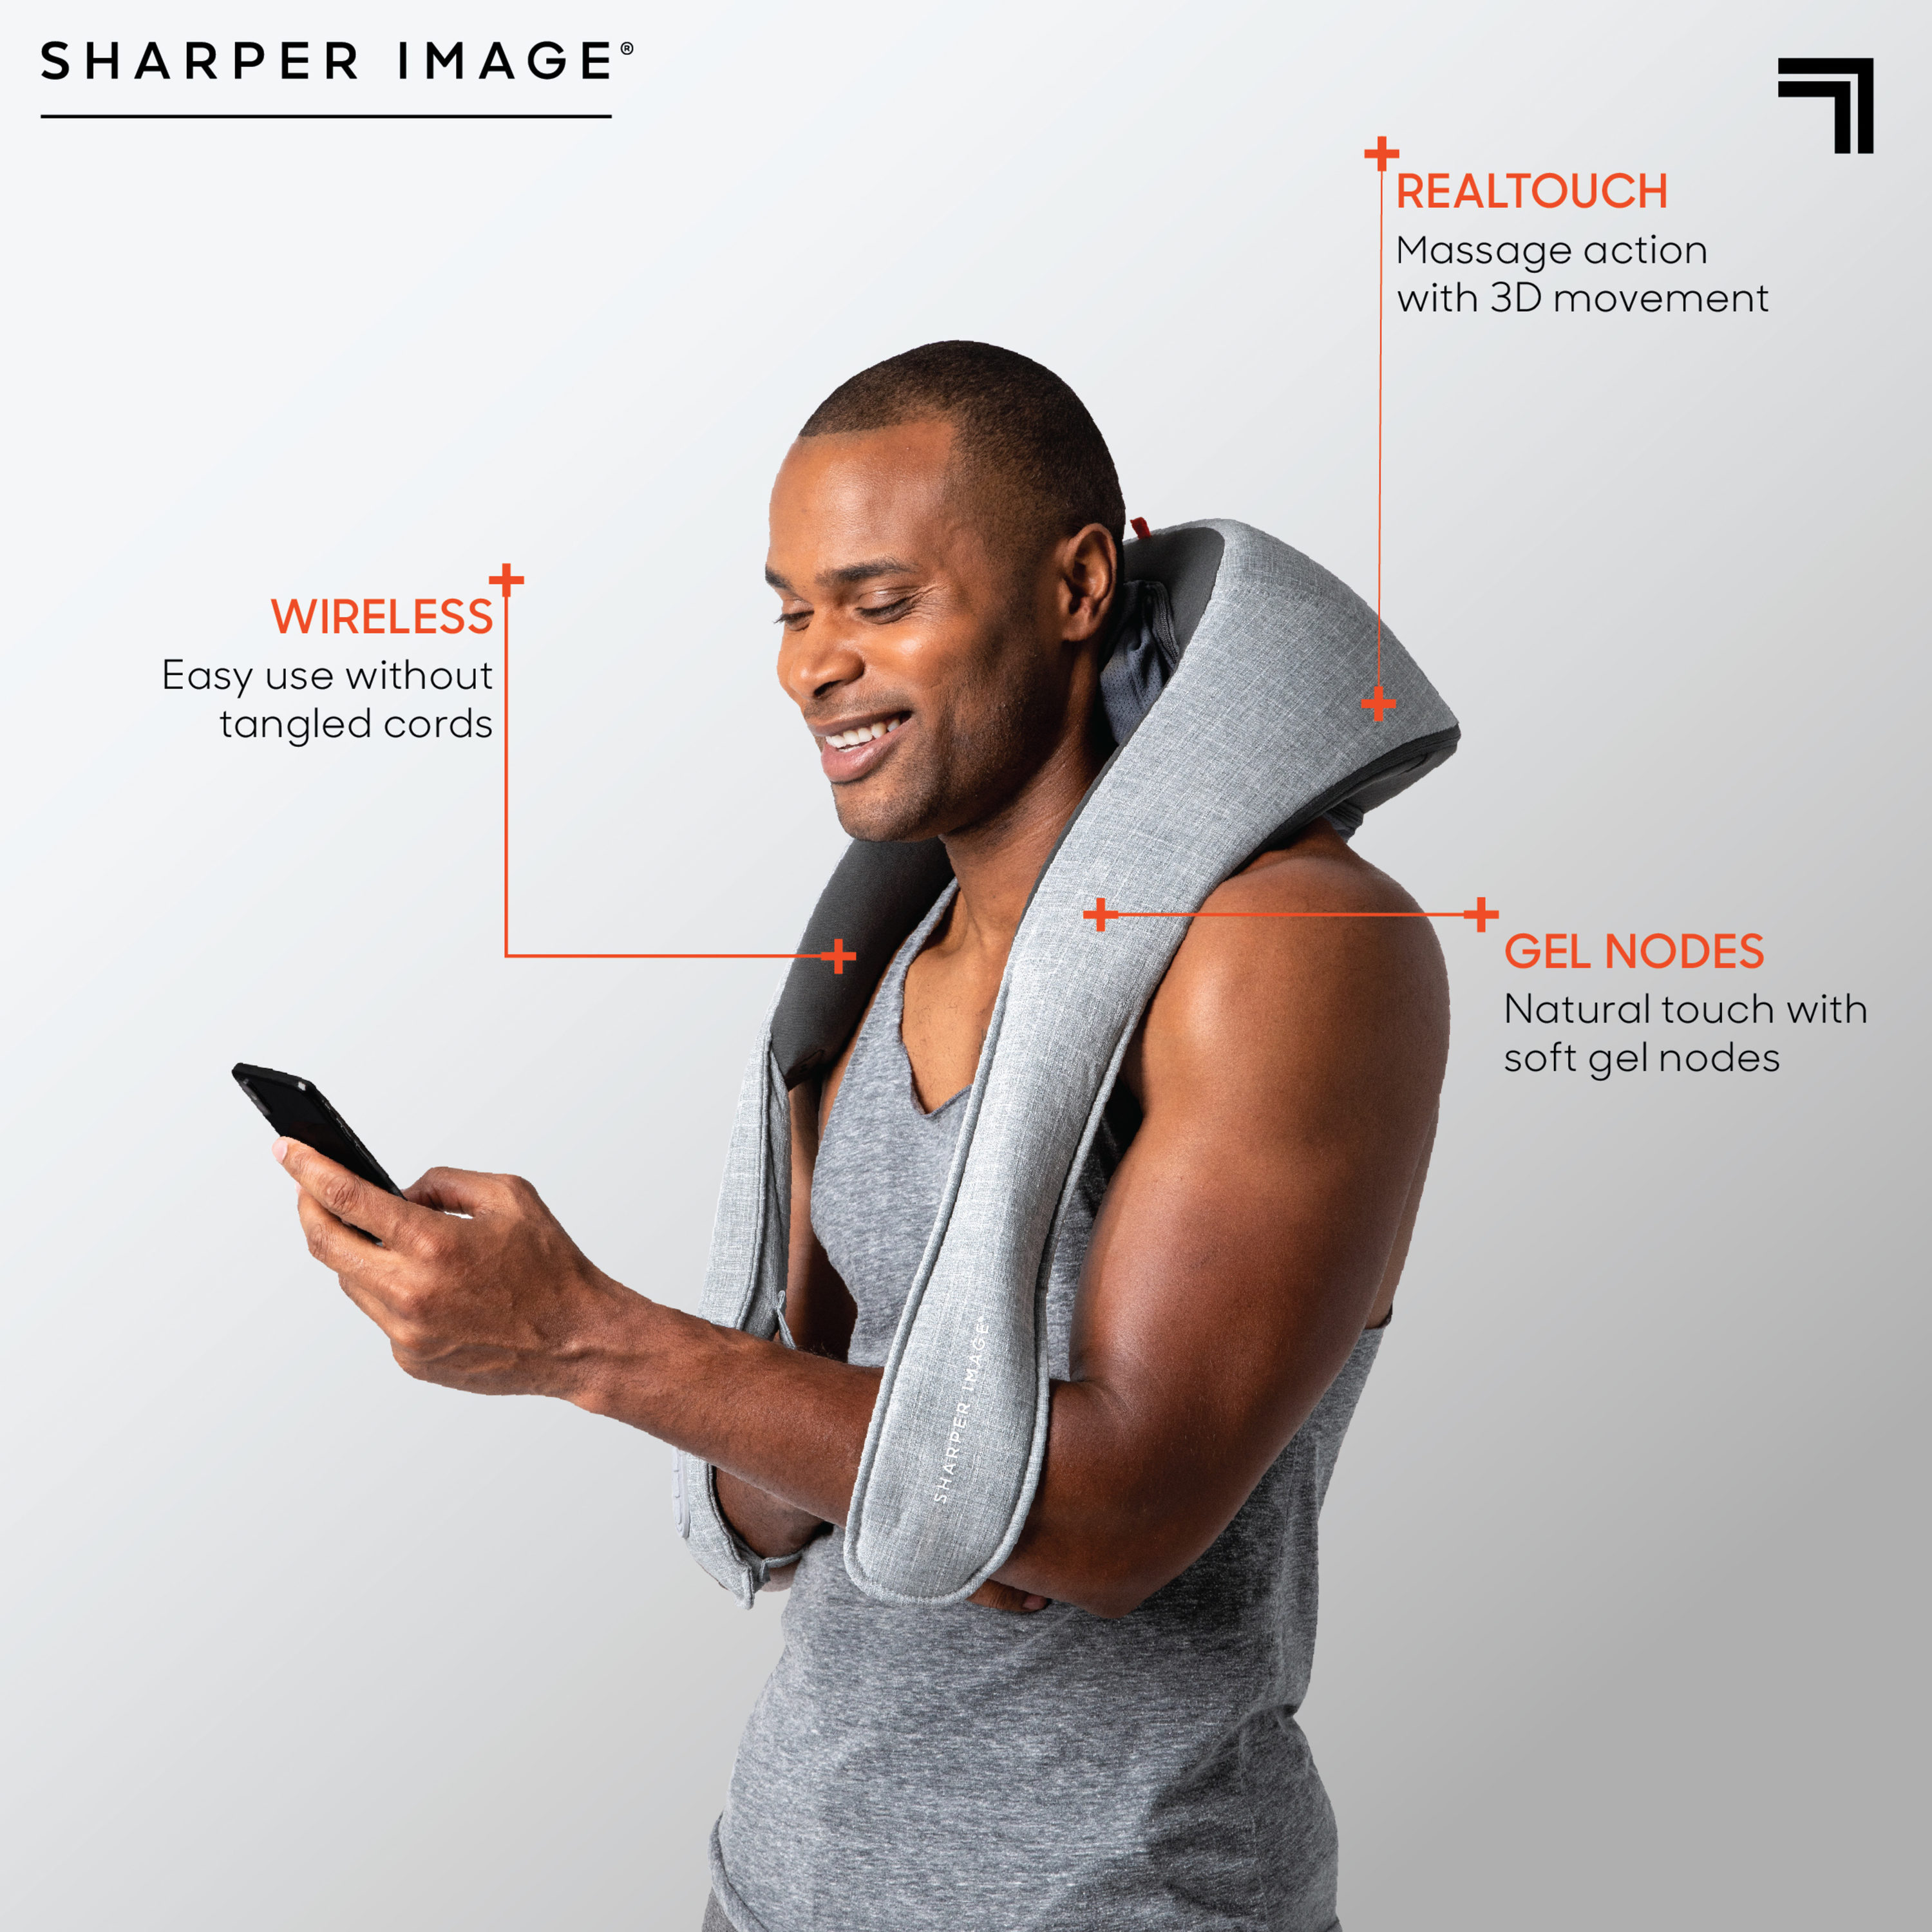 Sharper Image RealTouch Shiatsu Plus Cordless Neck Massager